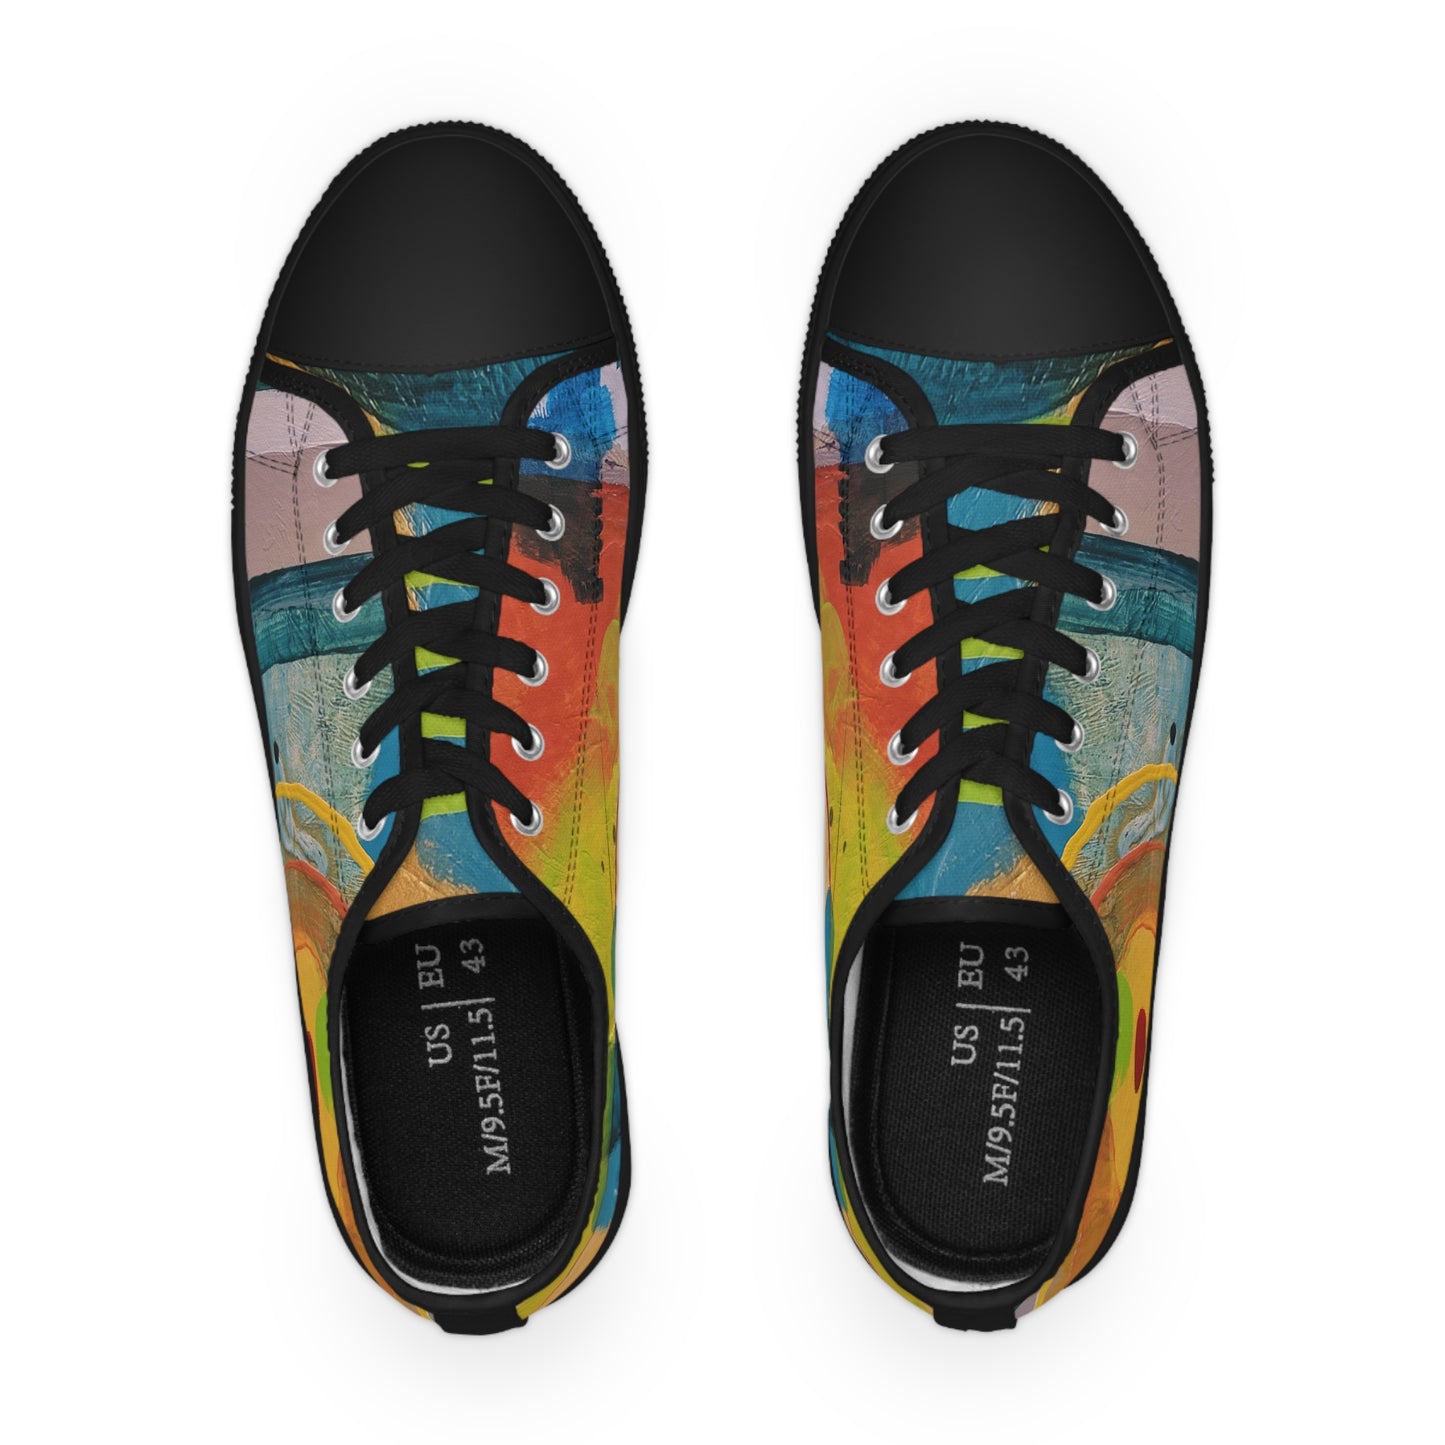 Men's Low Top Sneakers - 02200 US 14 Black sole